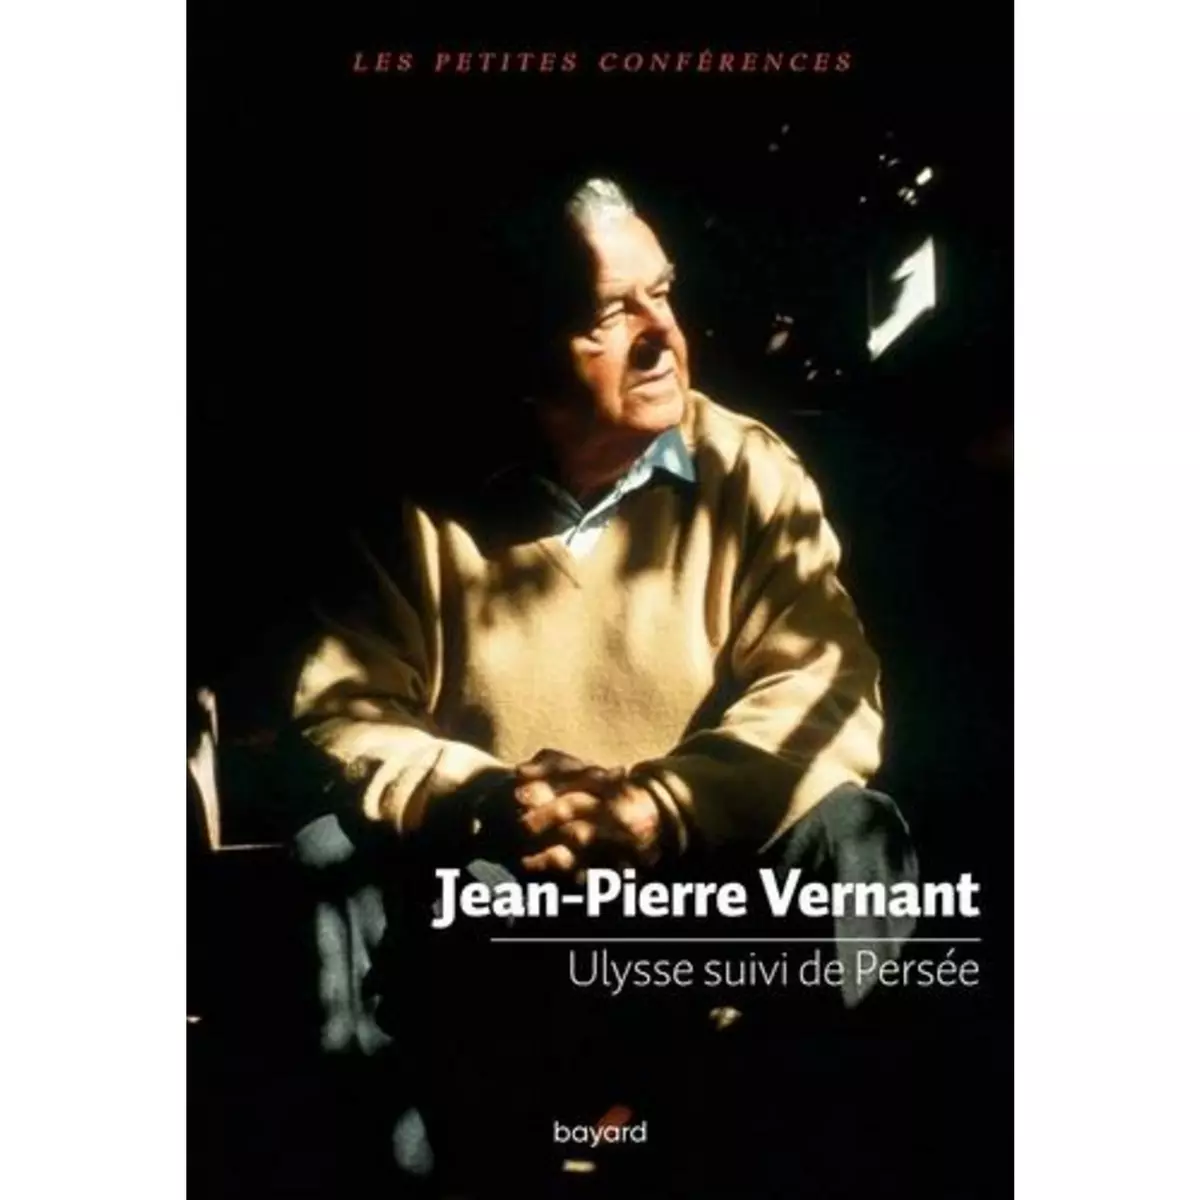  ULYSSE SUIVI DE PERSEE, Vernant Jean-Pierre